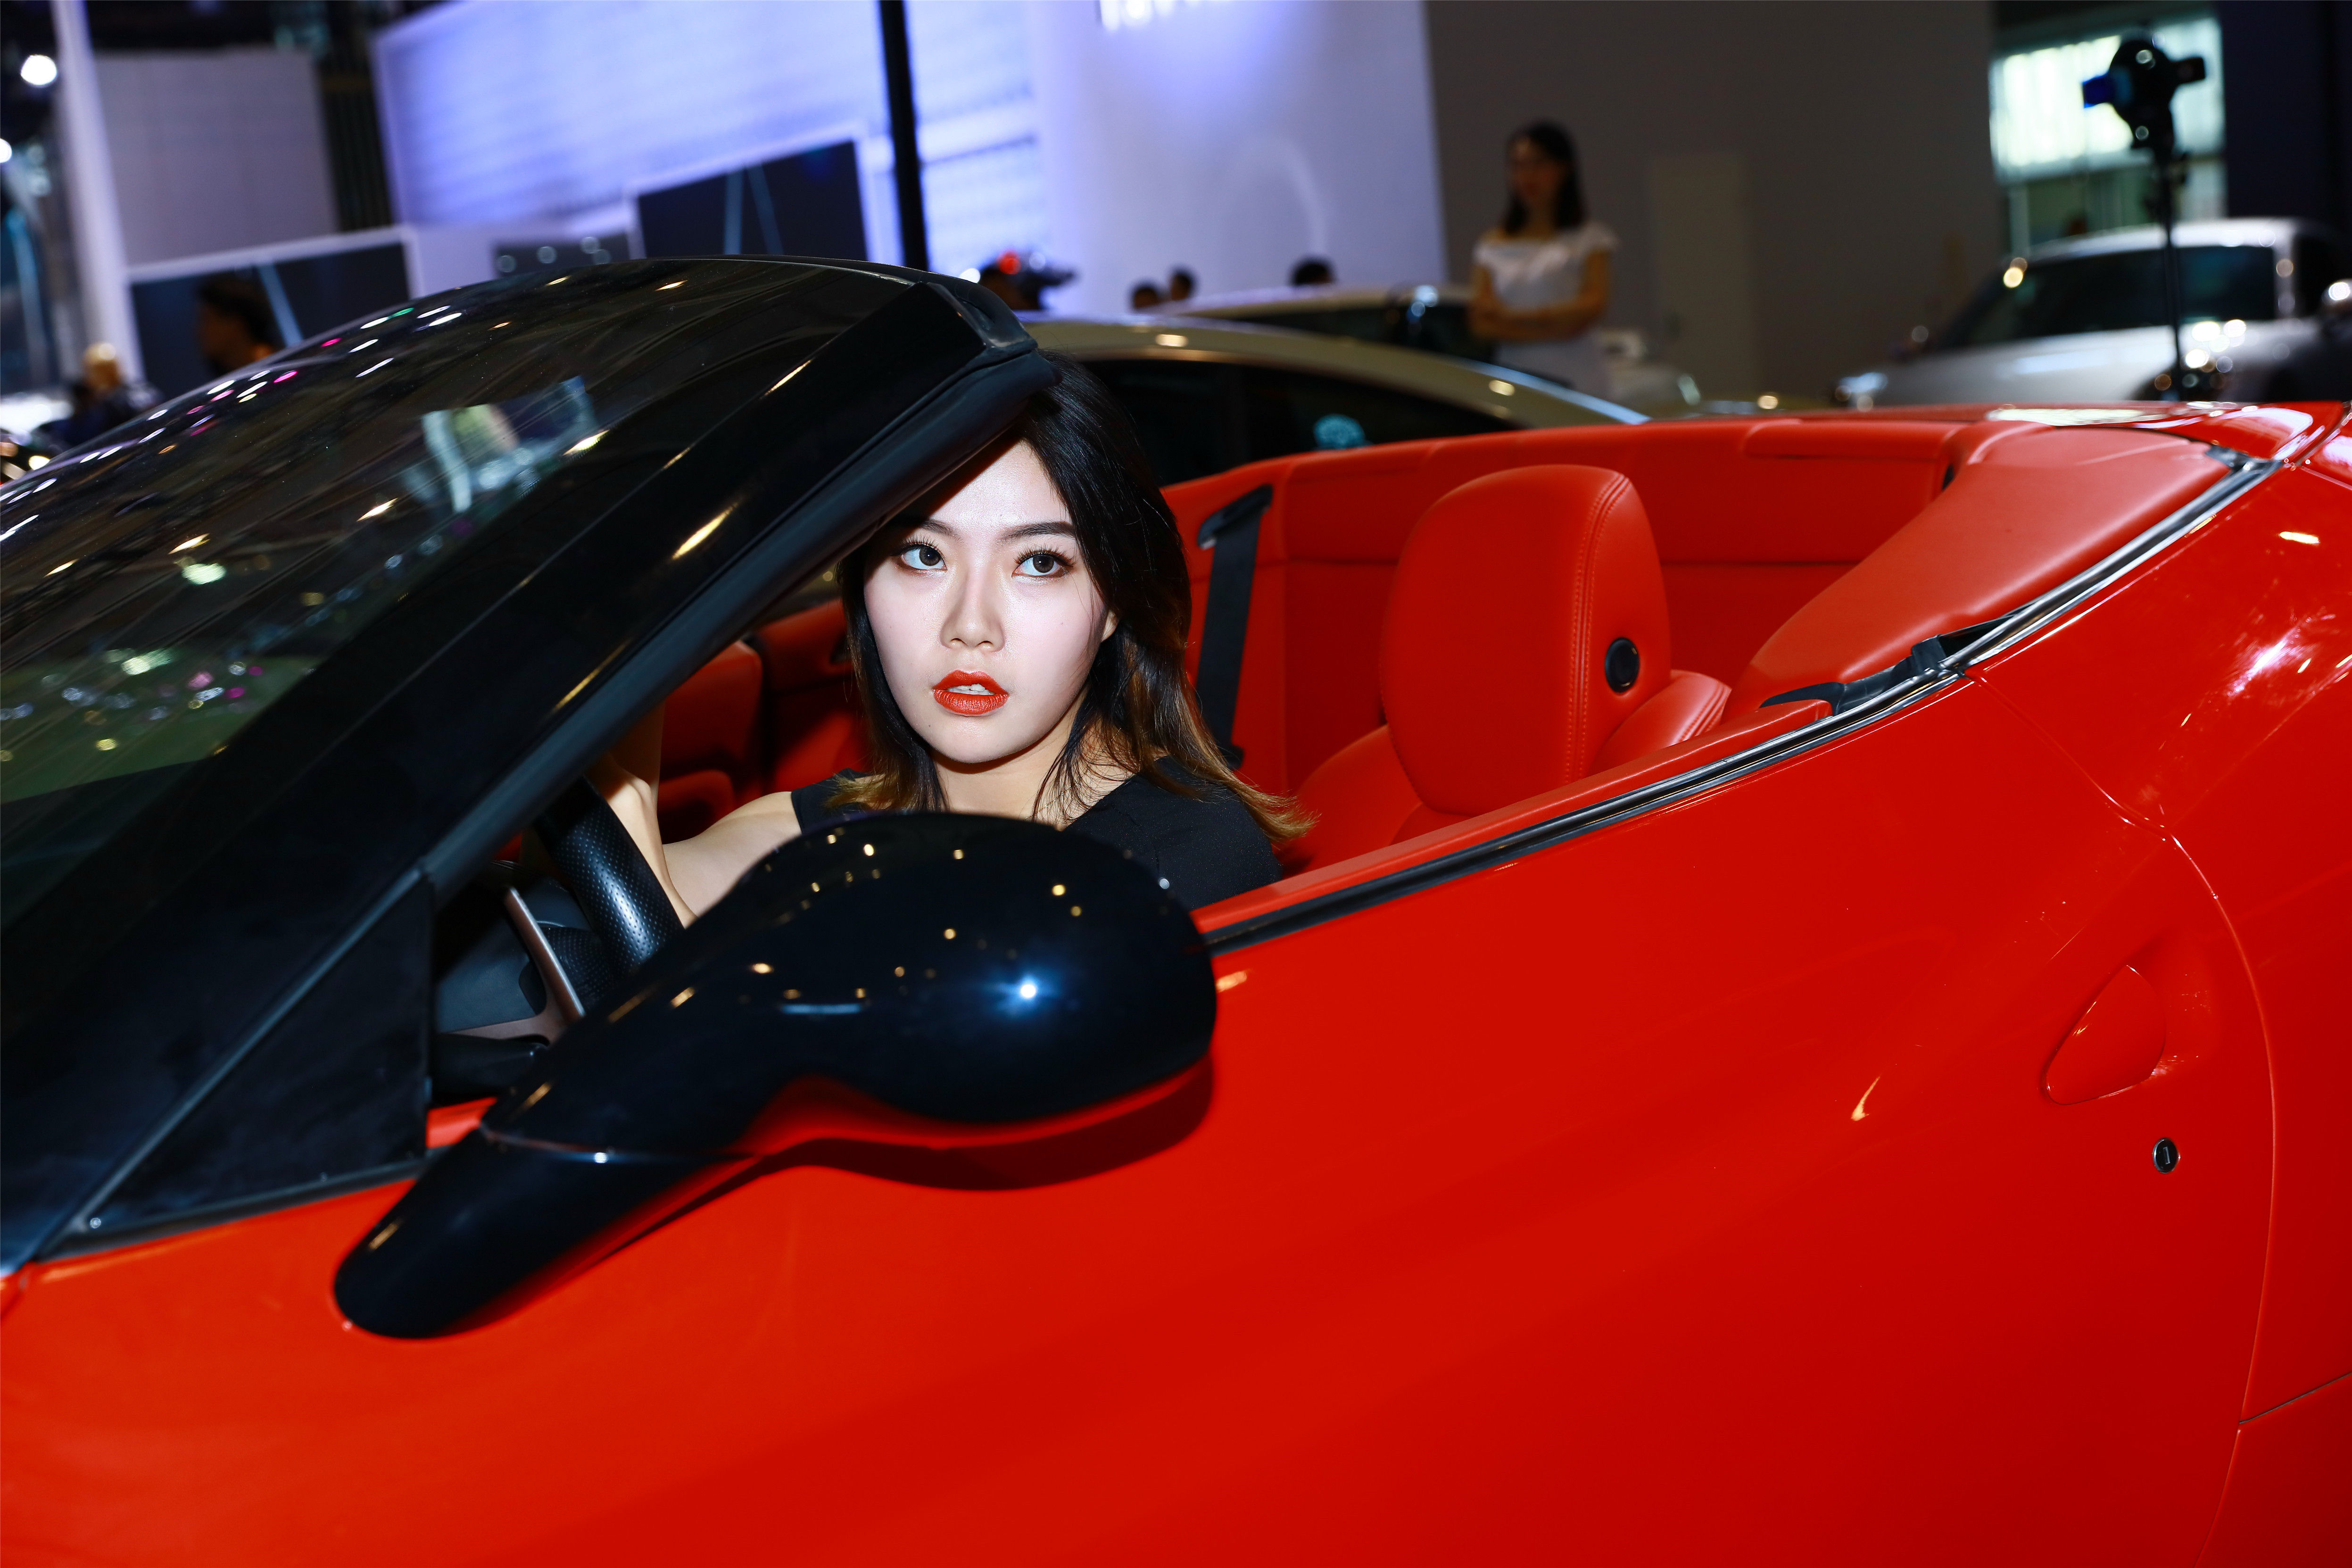 日产GT-R 改装车美女王君瑜模特高清桌面壁纸 - 美女贴图 - 华声论坛